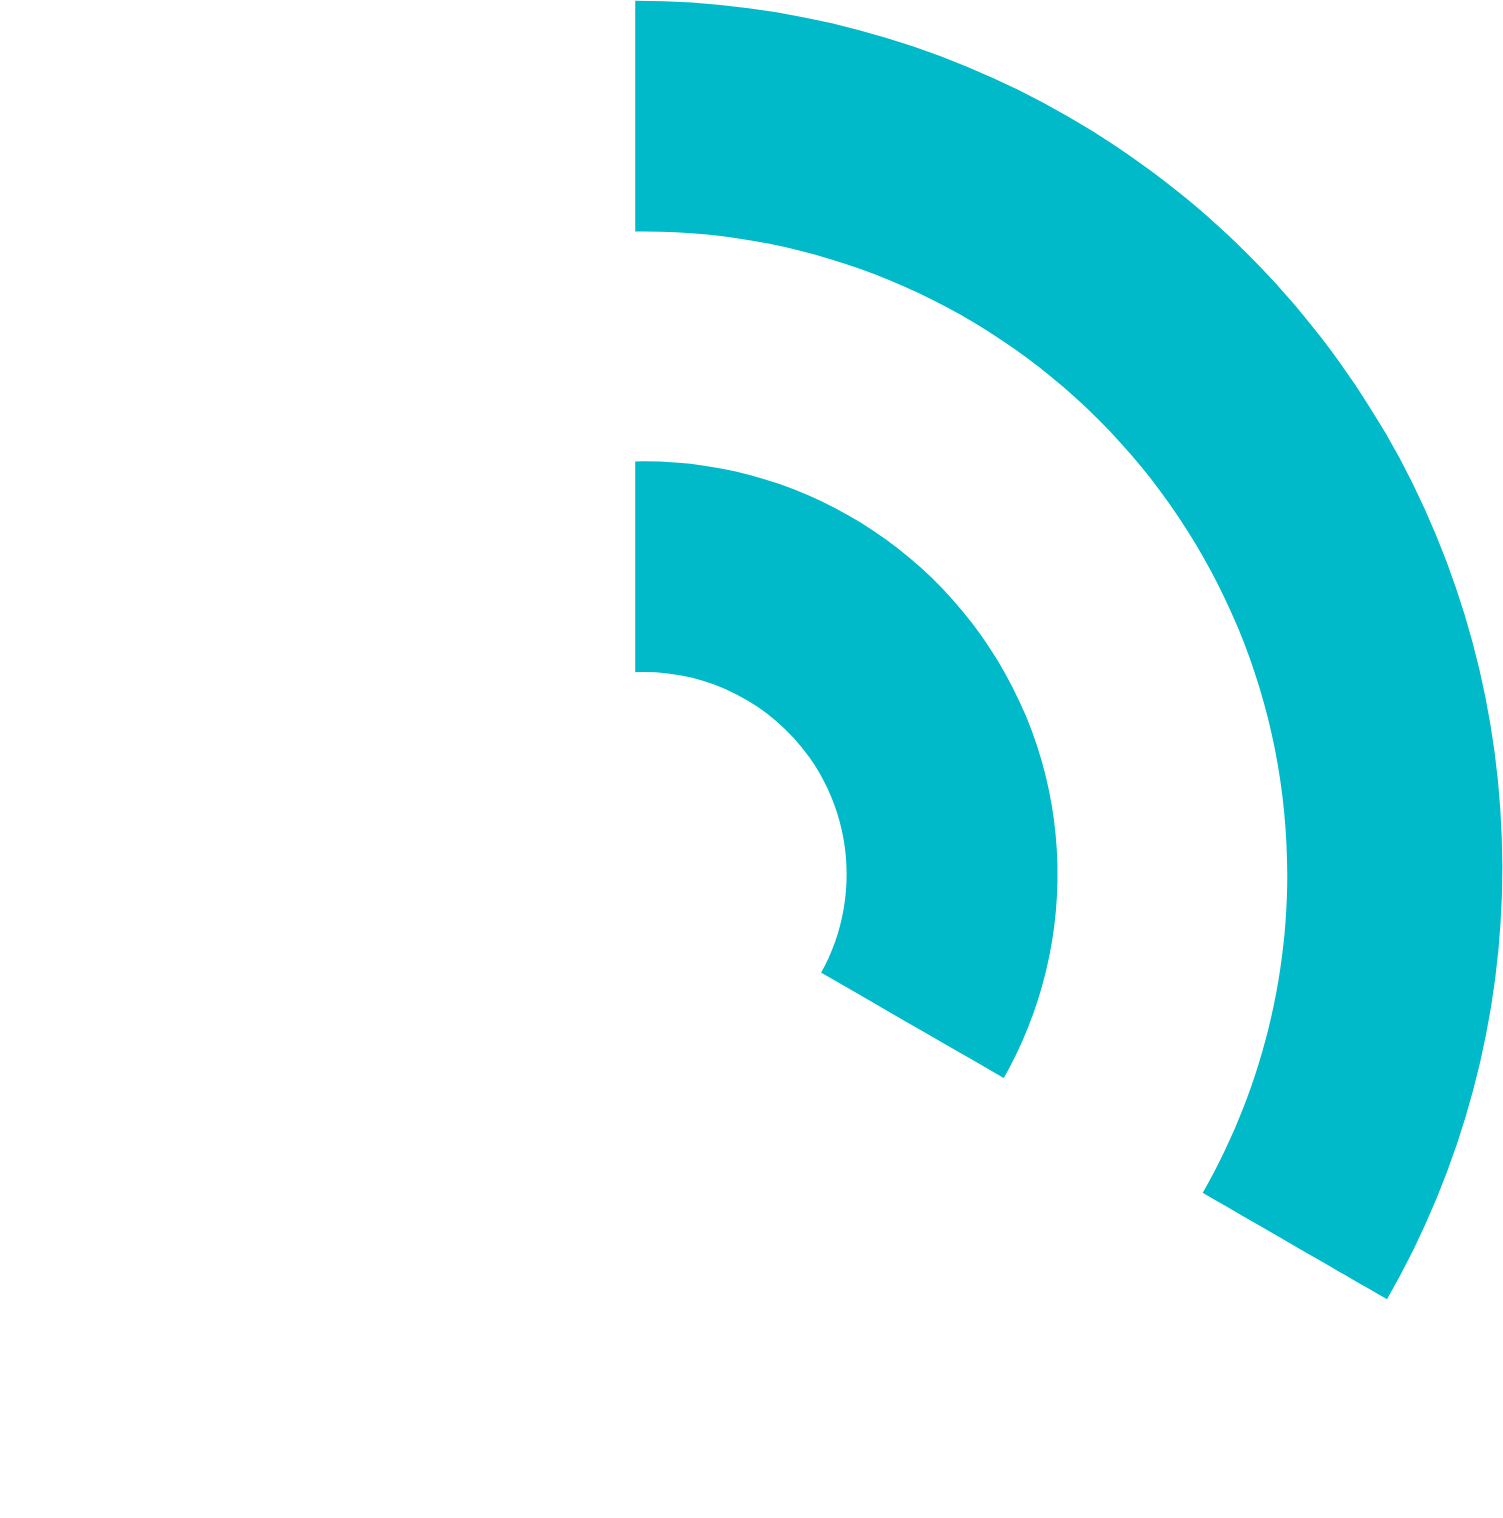 Innoviz logo for dark backgrounds (transparent PNG)